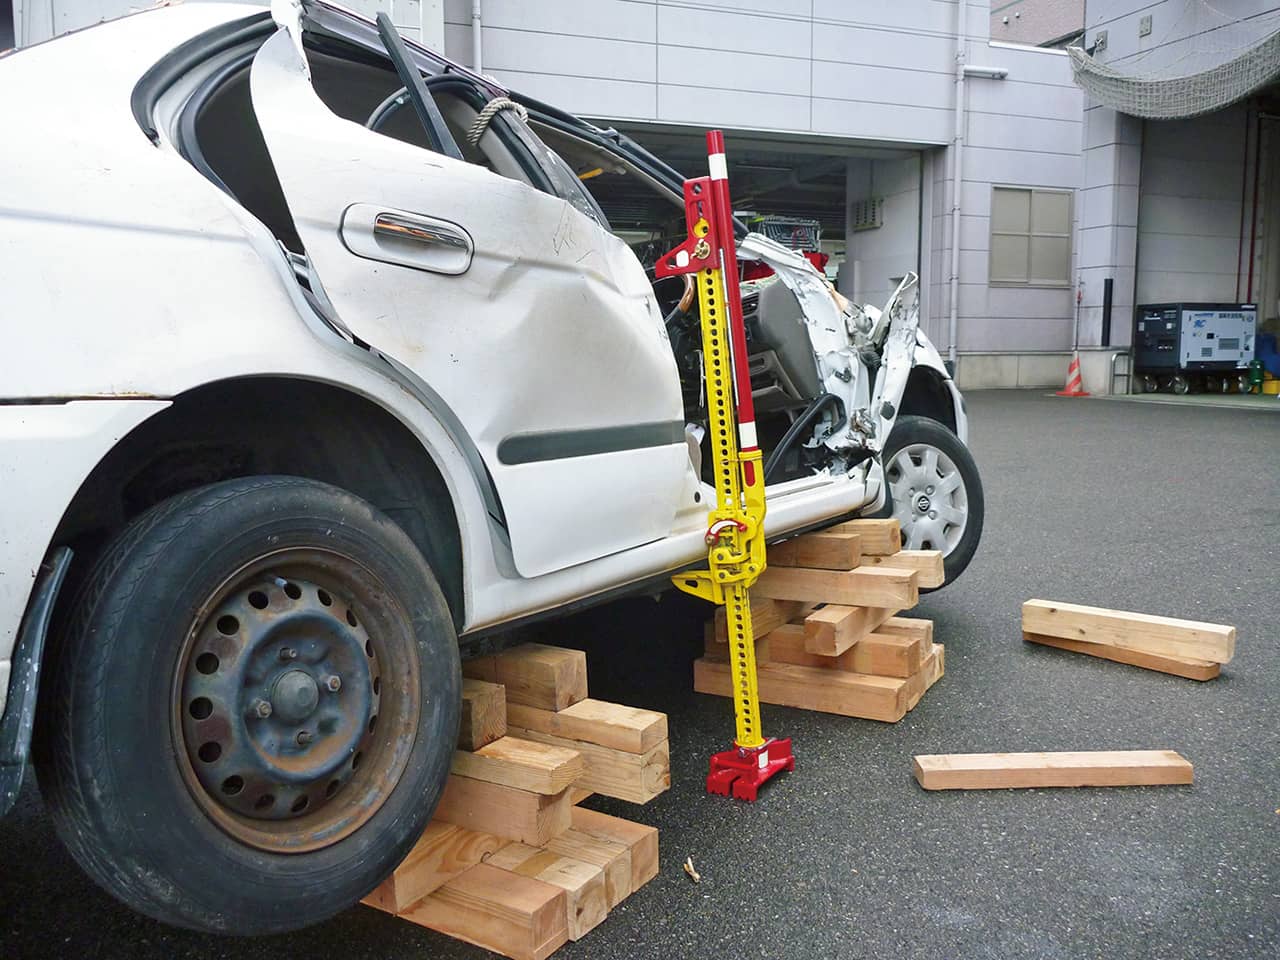 福岡市消防局での車両救助訓練にて。